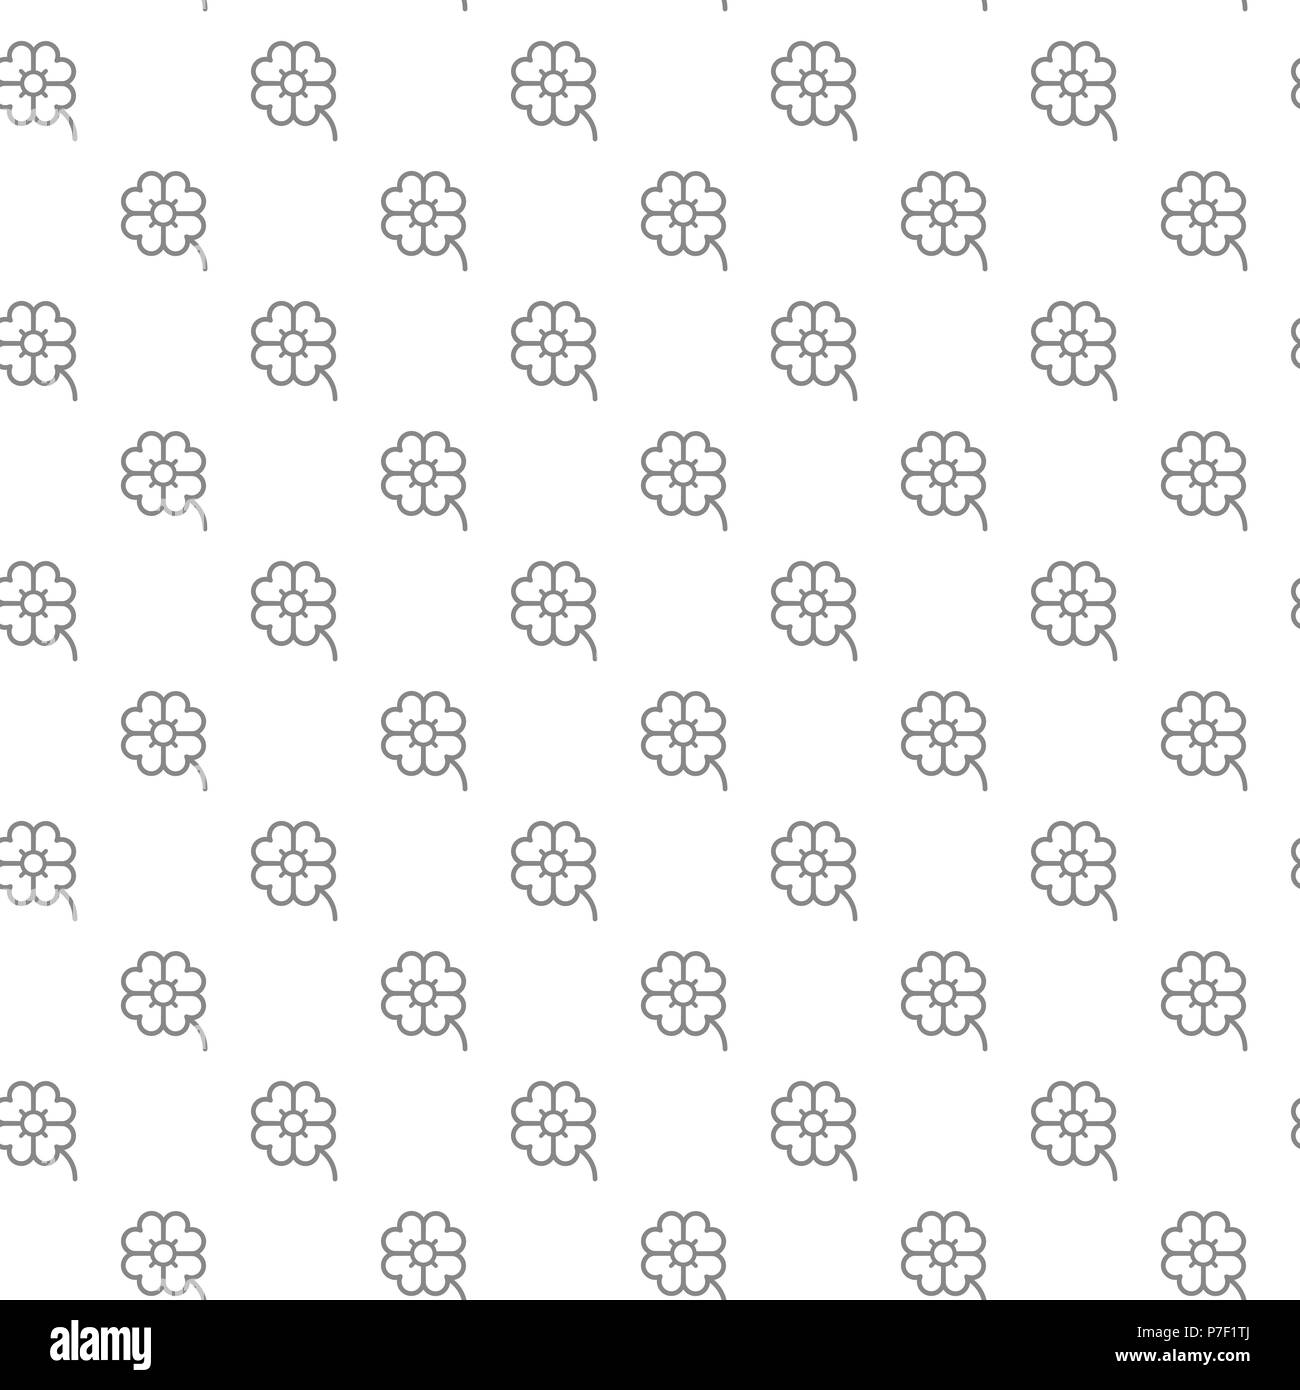 Einfache Four Leaf Clover nahtlose Muster mit verschiedenen Symbolen und Zeichen auf weißem Hintergrund flachbild Vector Illustration Stock Vektor